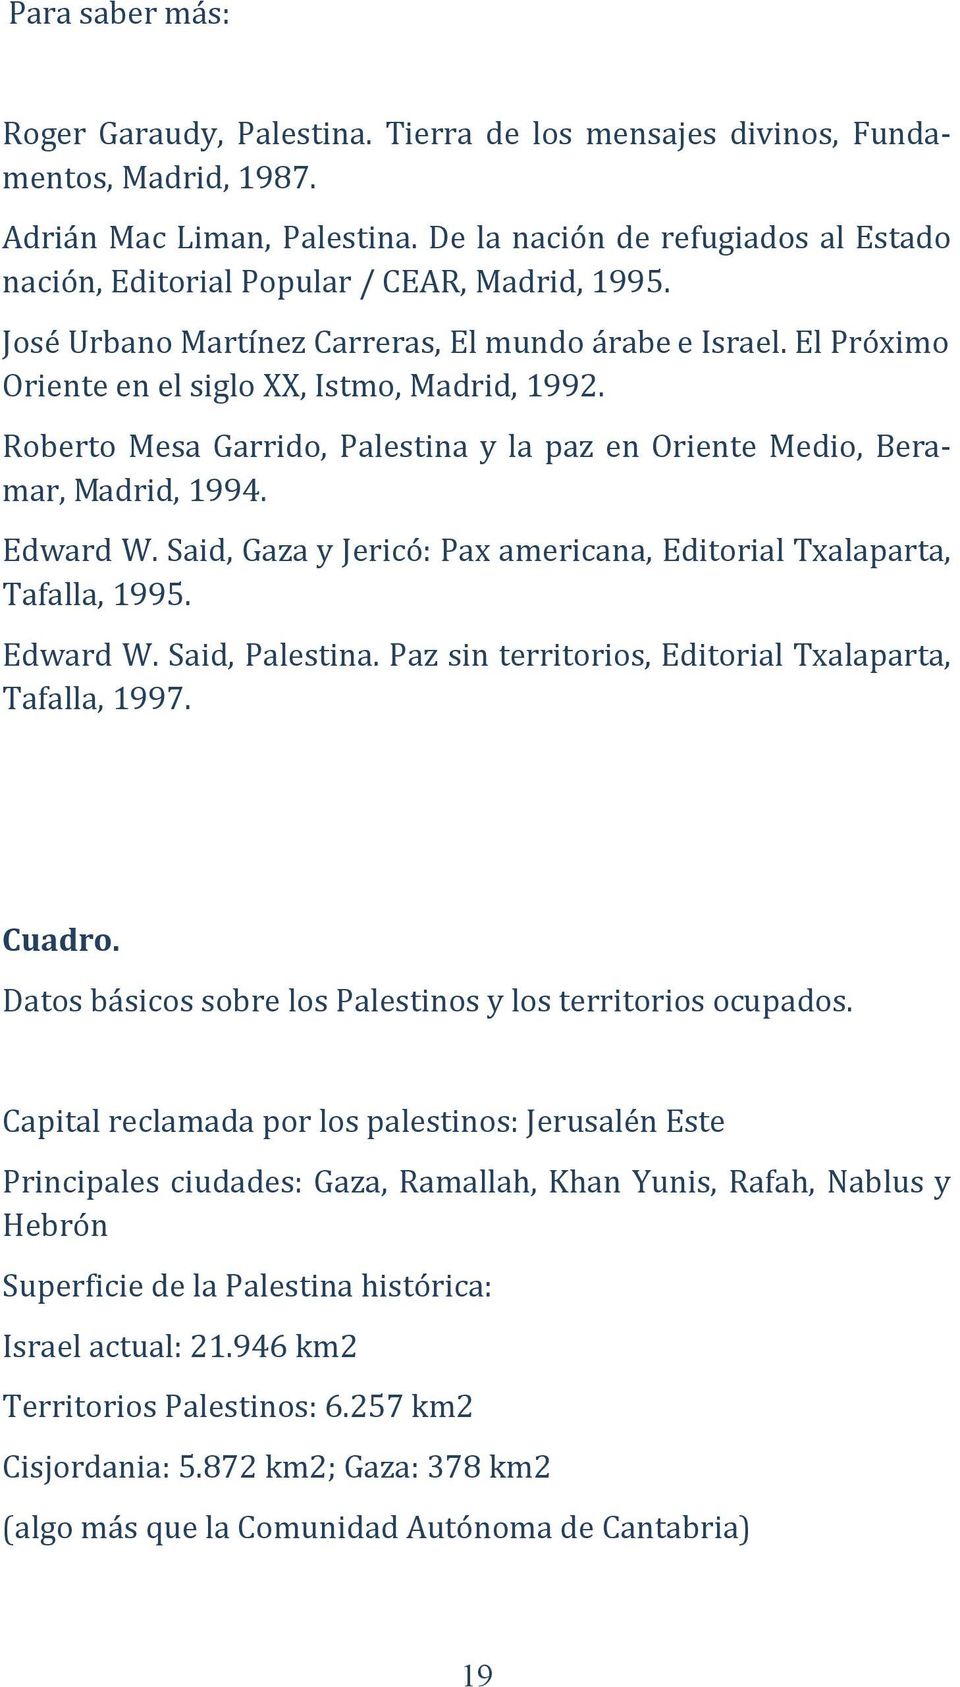 Roberto Mesa Garrido, Palestina y la paz en Oriente Medio, Beramar, Madrid, 1994. Edward W. Said, Gaza y Jericó: Pax americana, Editorial Txalaparta, Tafalla, 1995. Edward W. Said, Palestina.